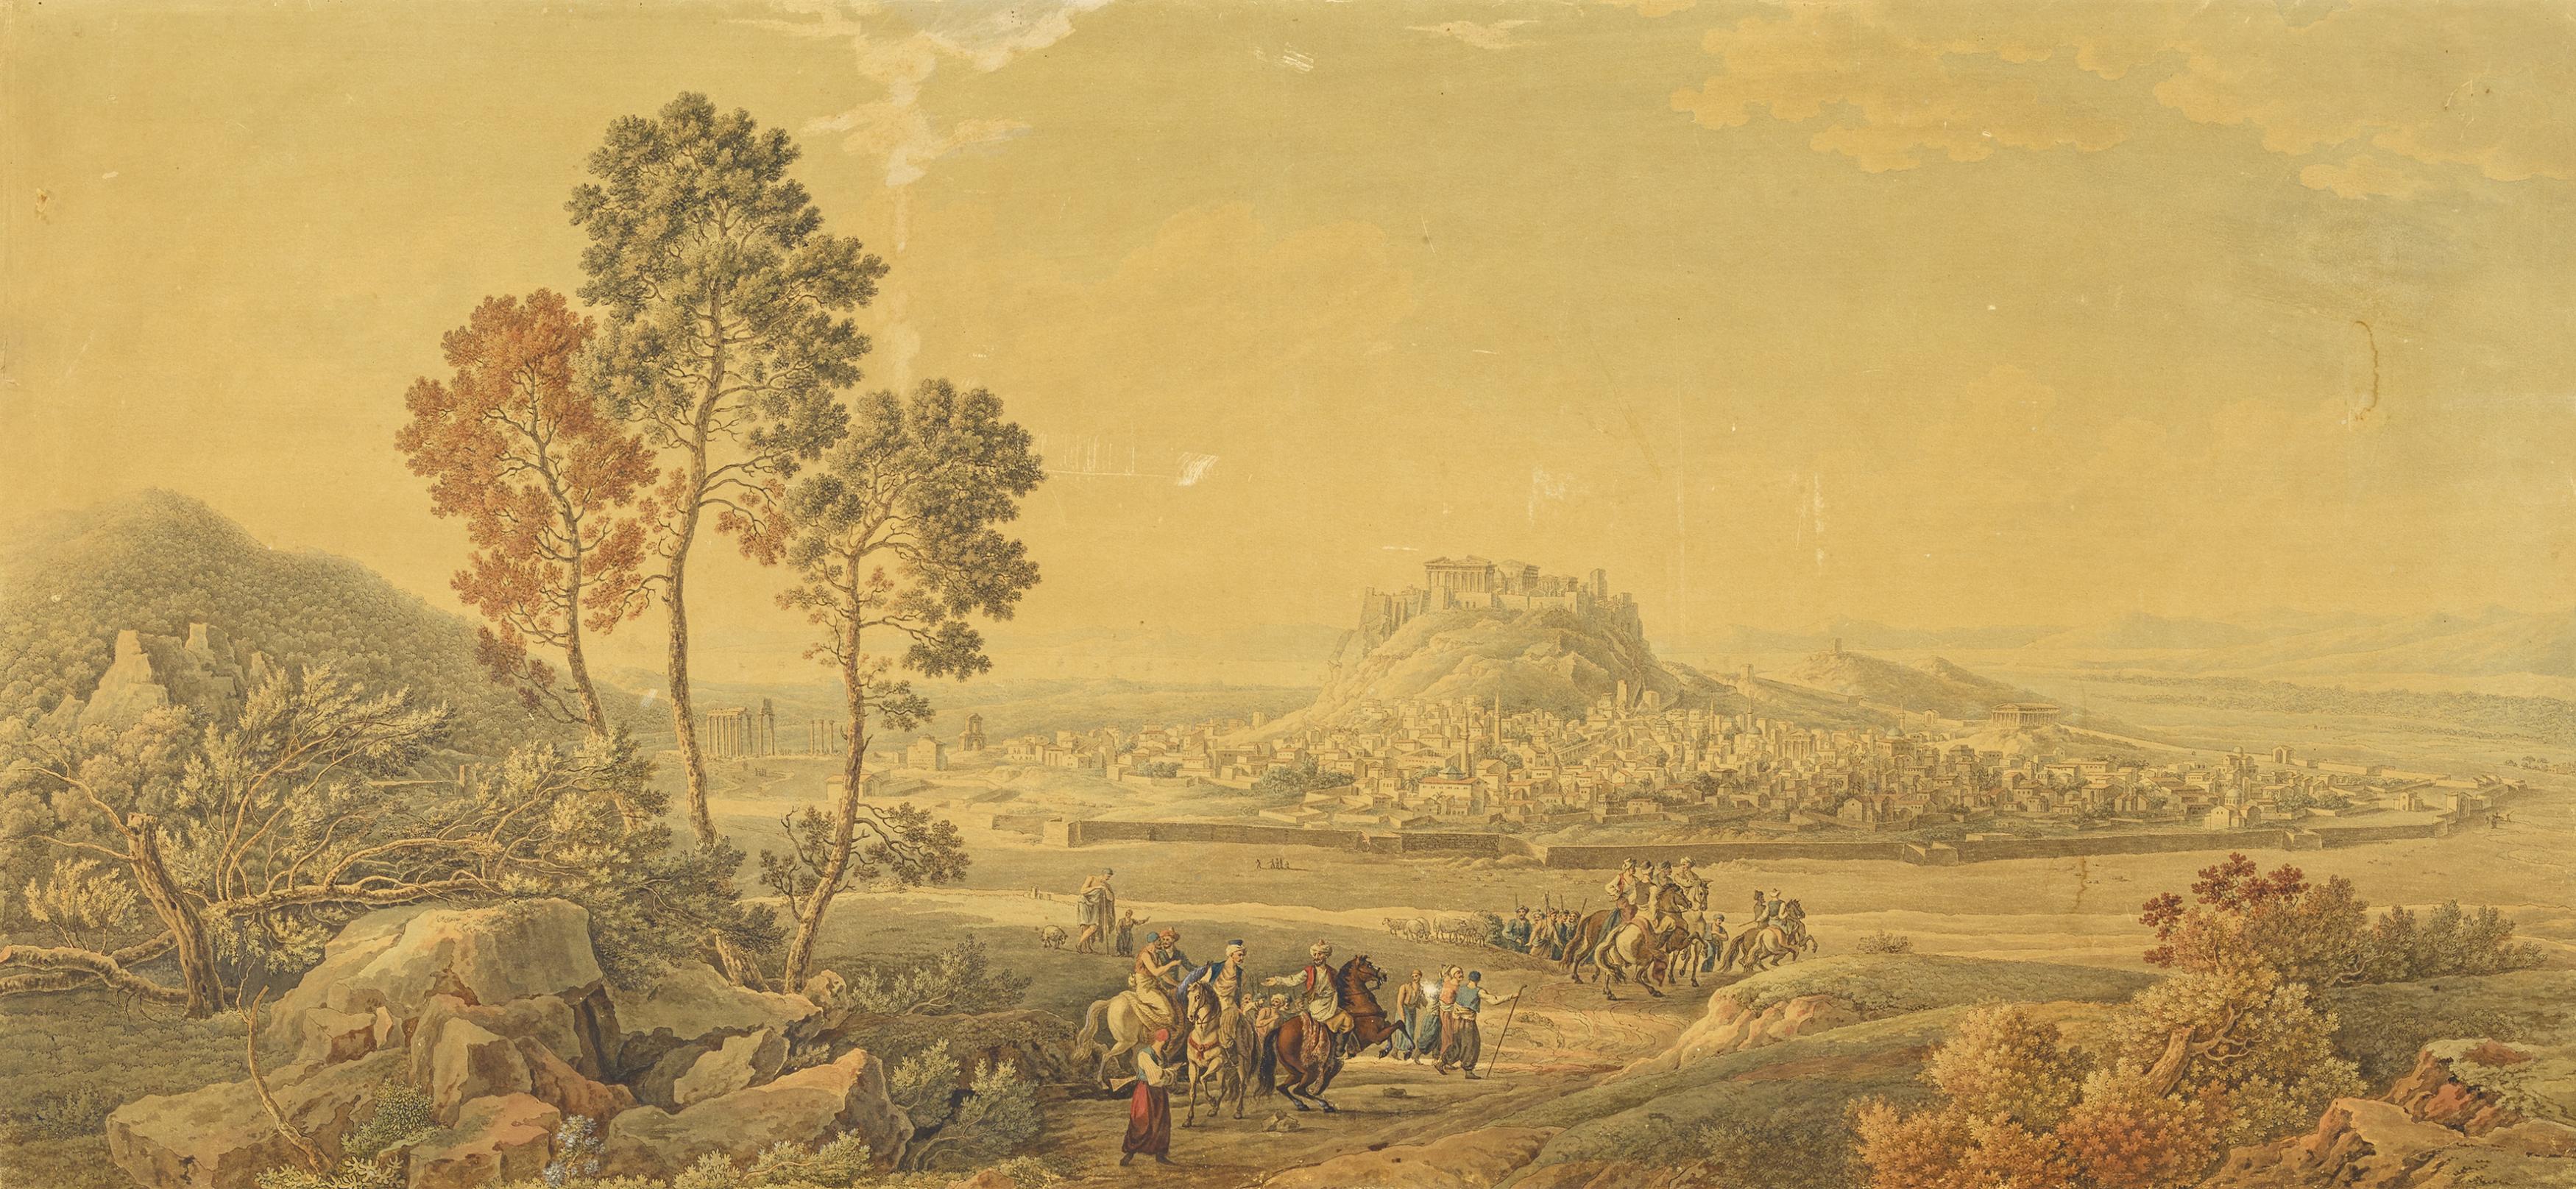 Tielker, Johann FriedrichBraunschweig 1763 - 1832Blick auf das alte Athen mit der Akropolis über den